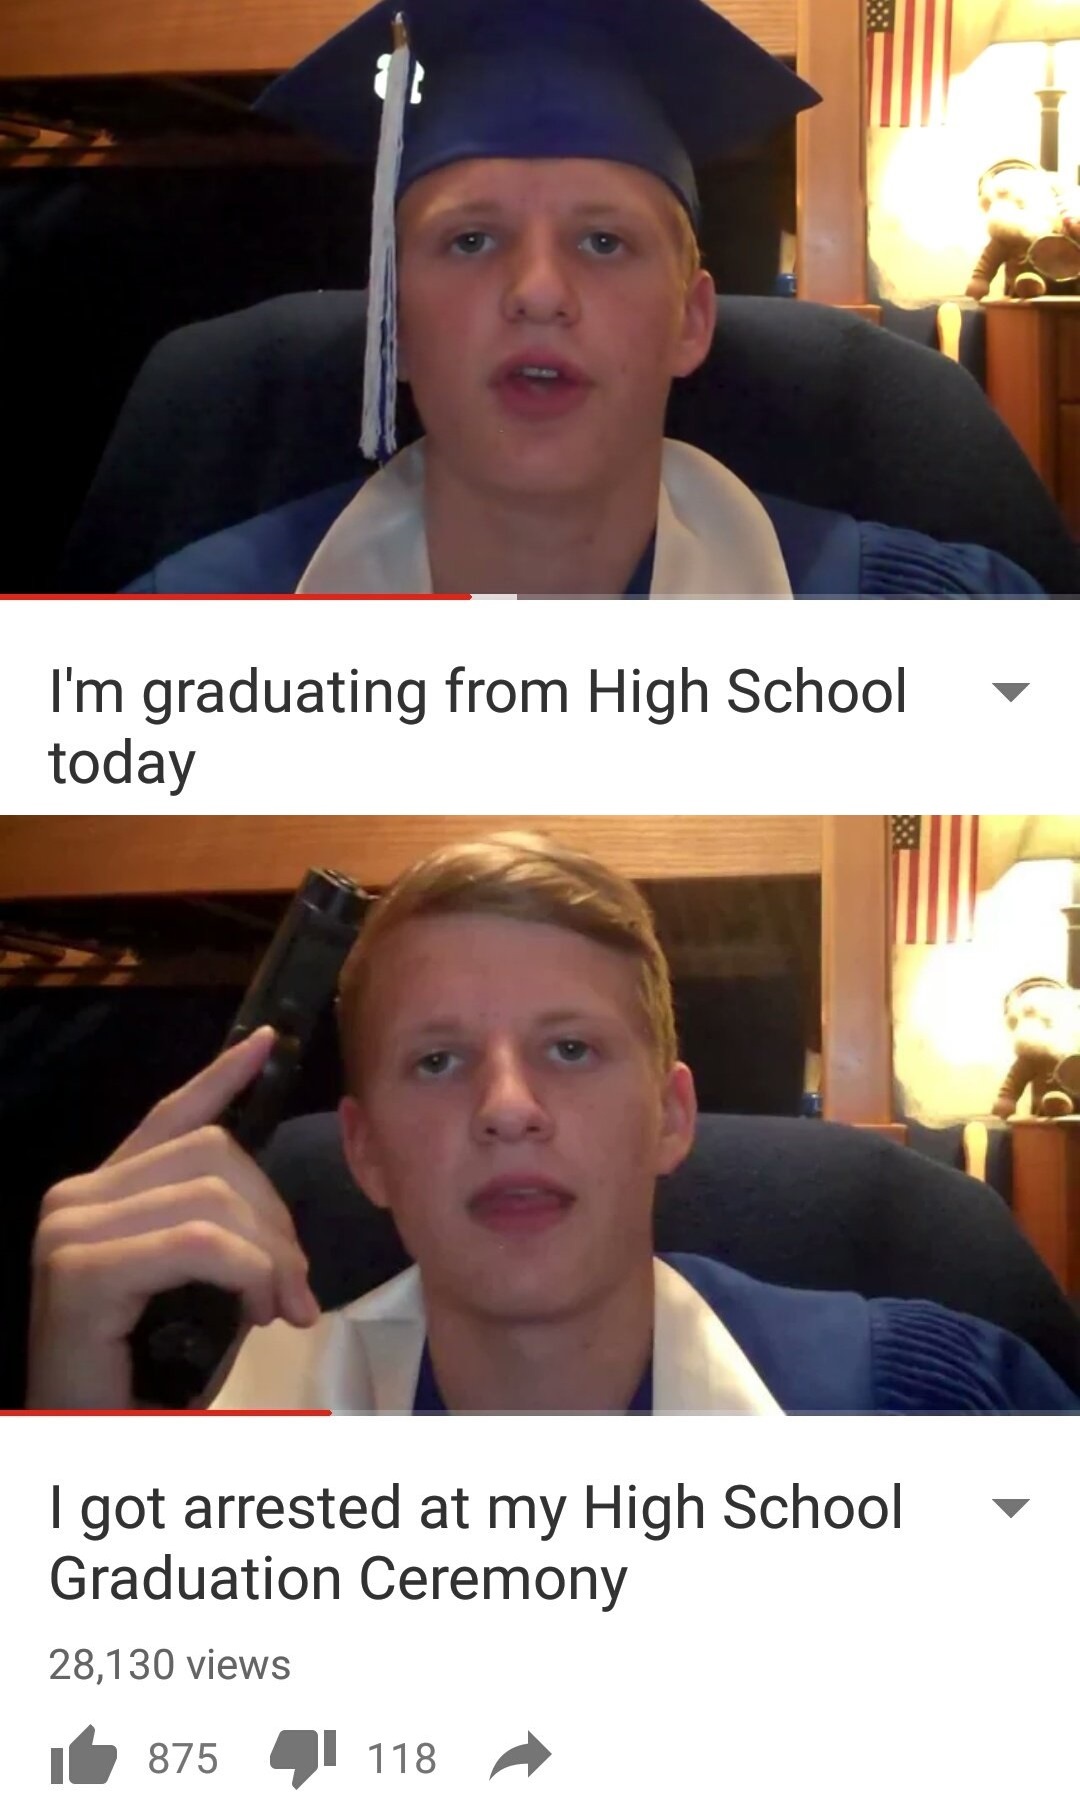 dongs in a graduation - meme